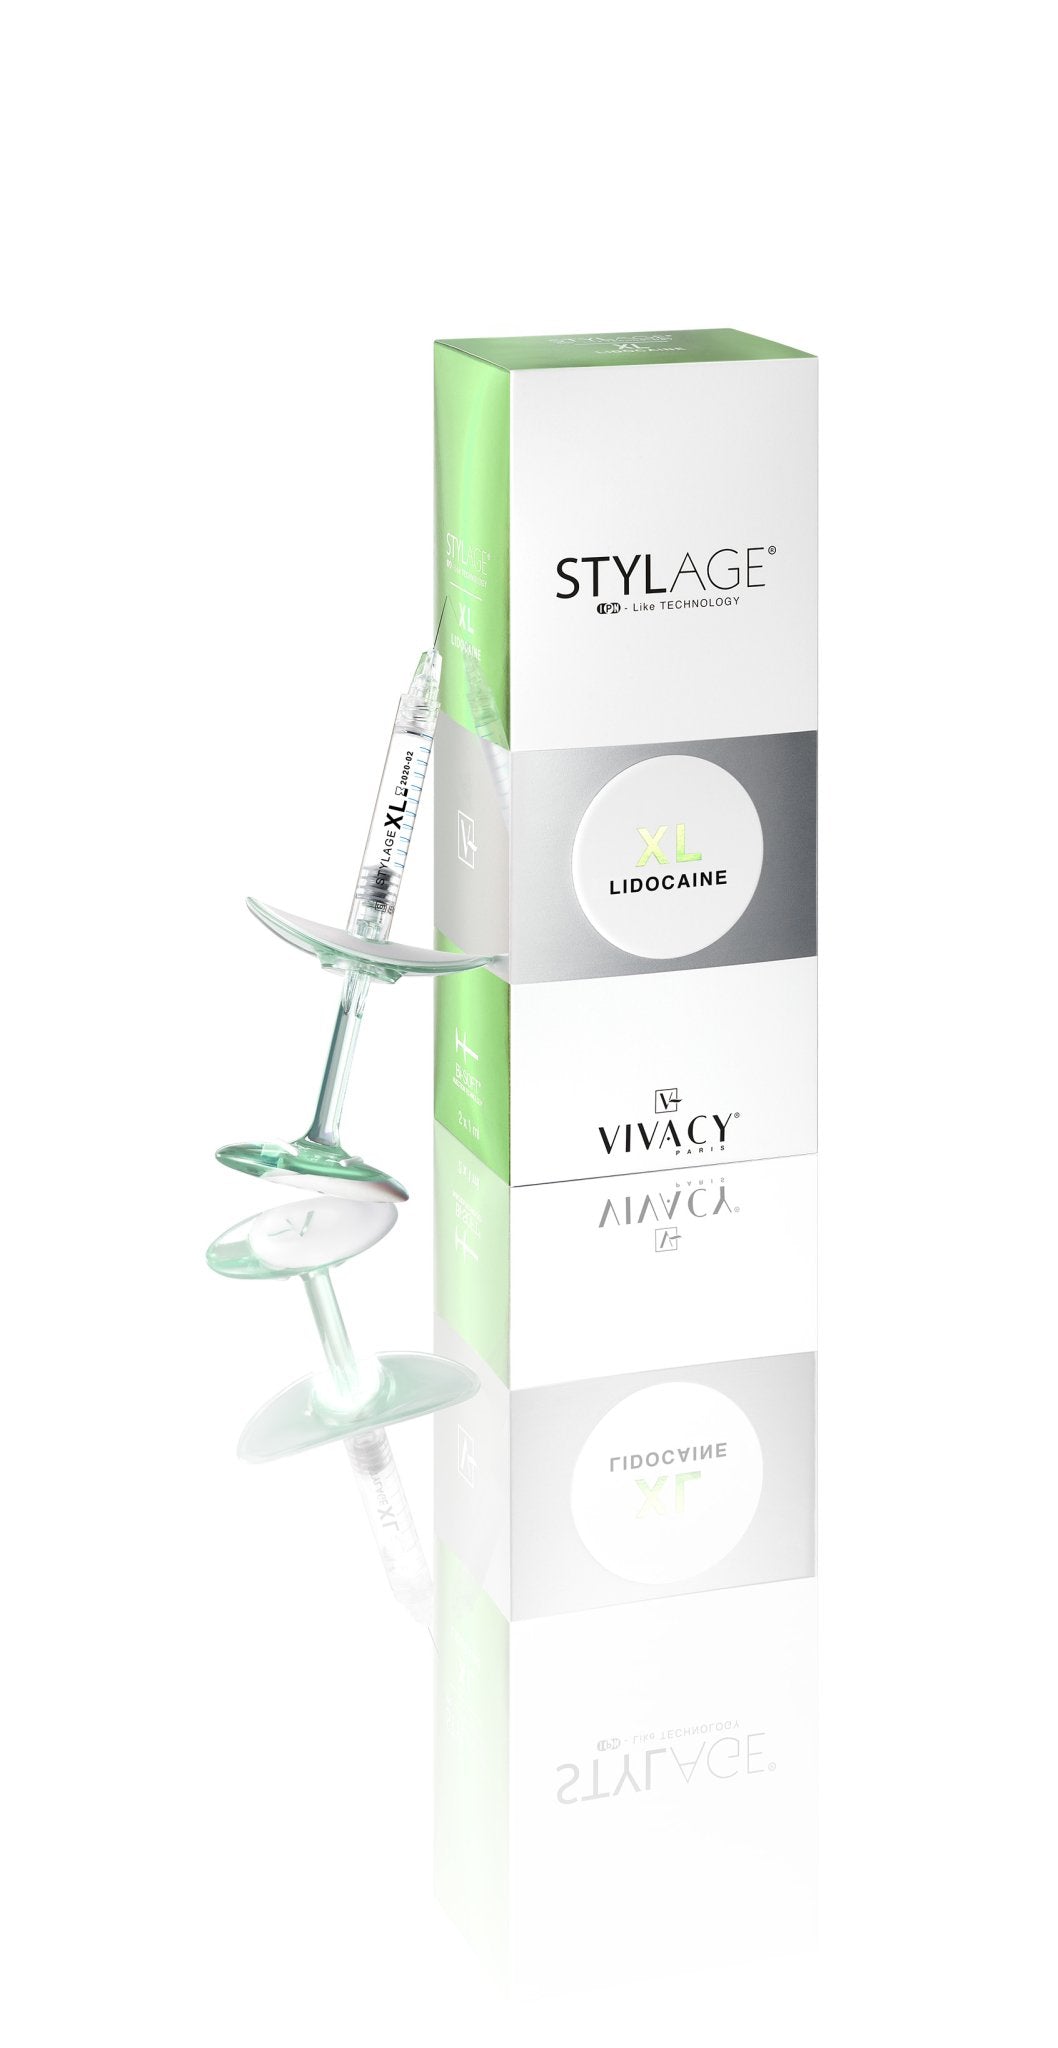 Vivacy - Stylage XL Lidocaine Bi-Soft 2 x 1ml - DANYCARE